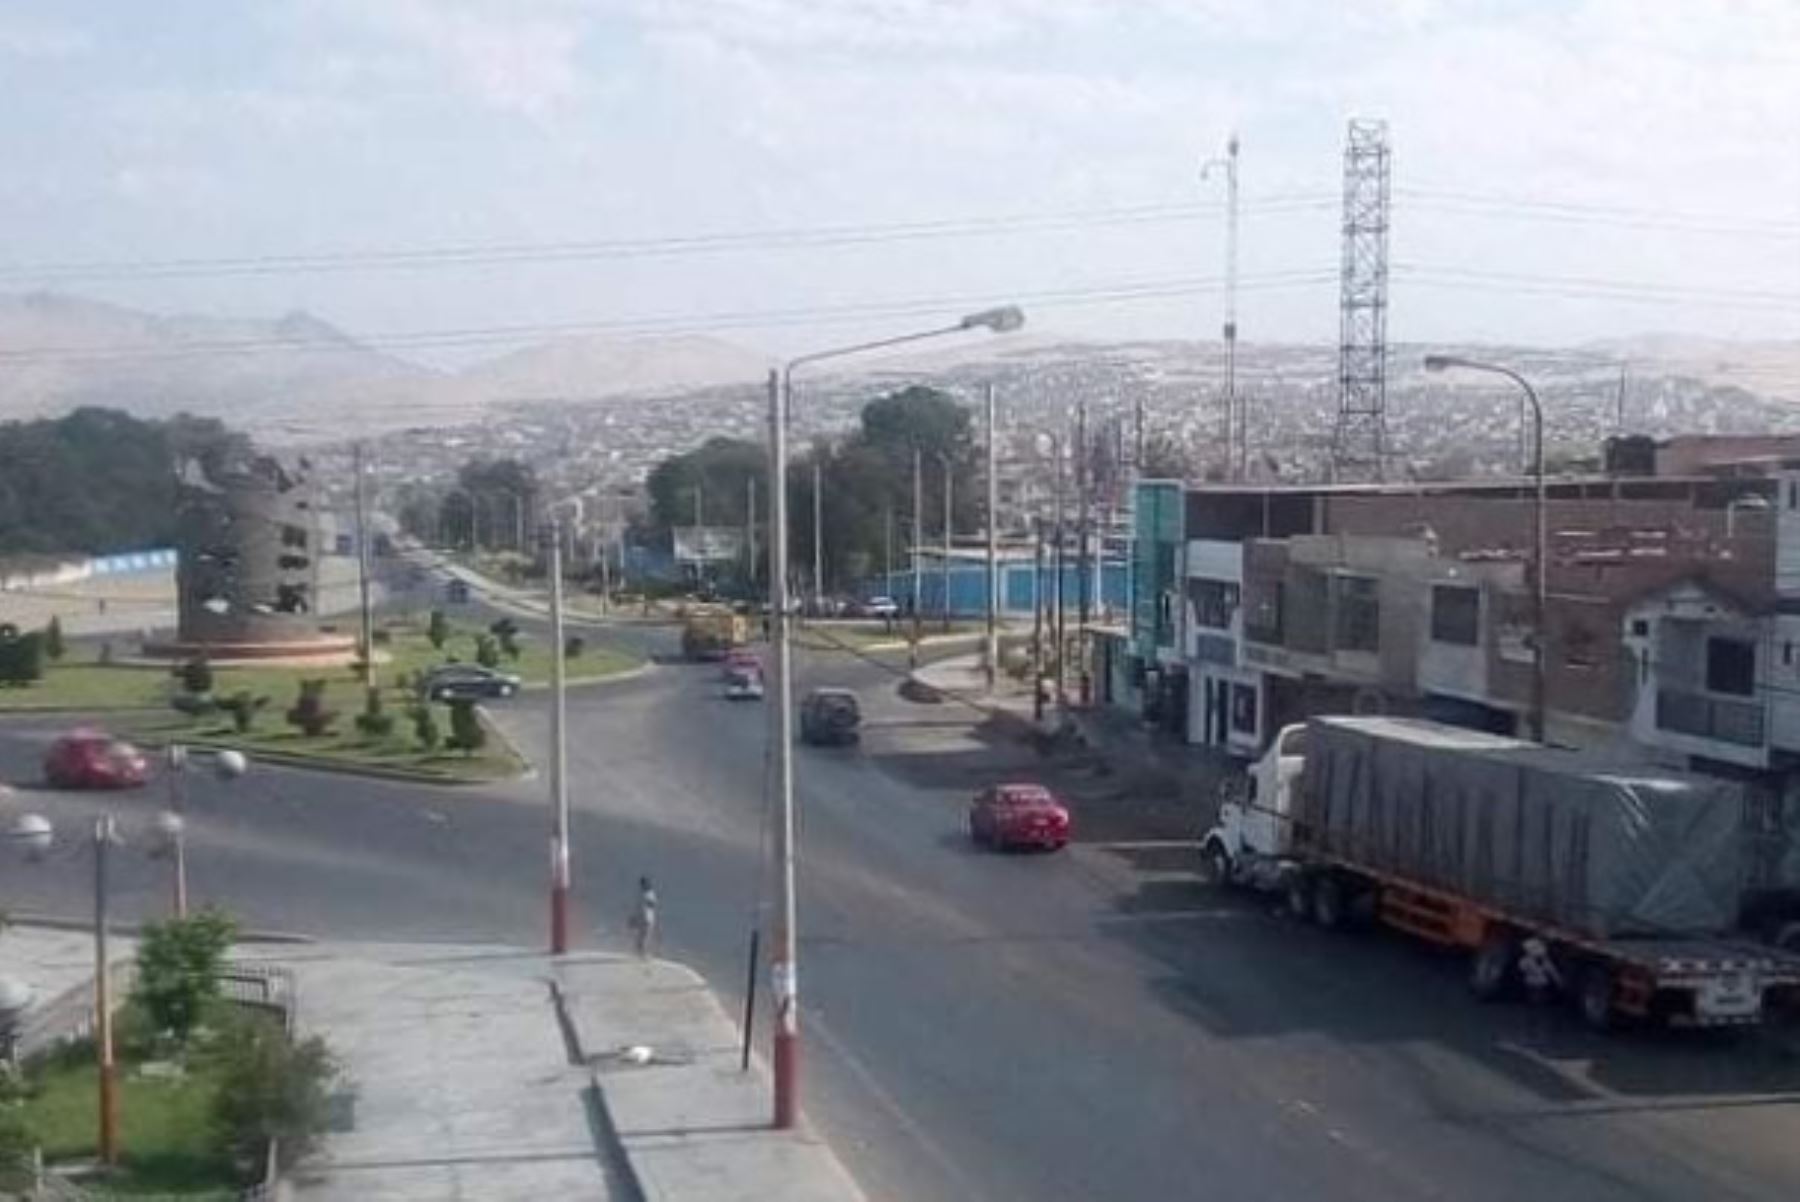 Vista panorámica de un sector de la ciudad de Chimbote, epicentro de la pandemia de covid-19 en la región Áncash.